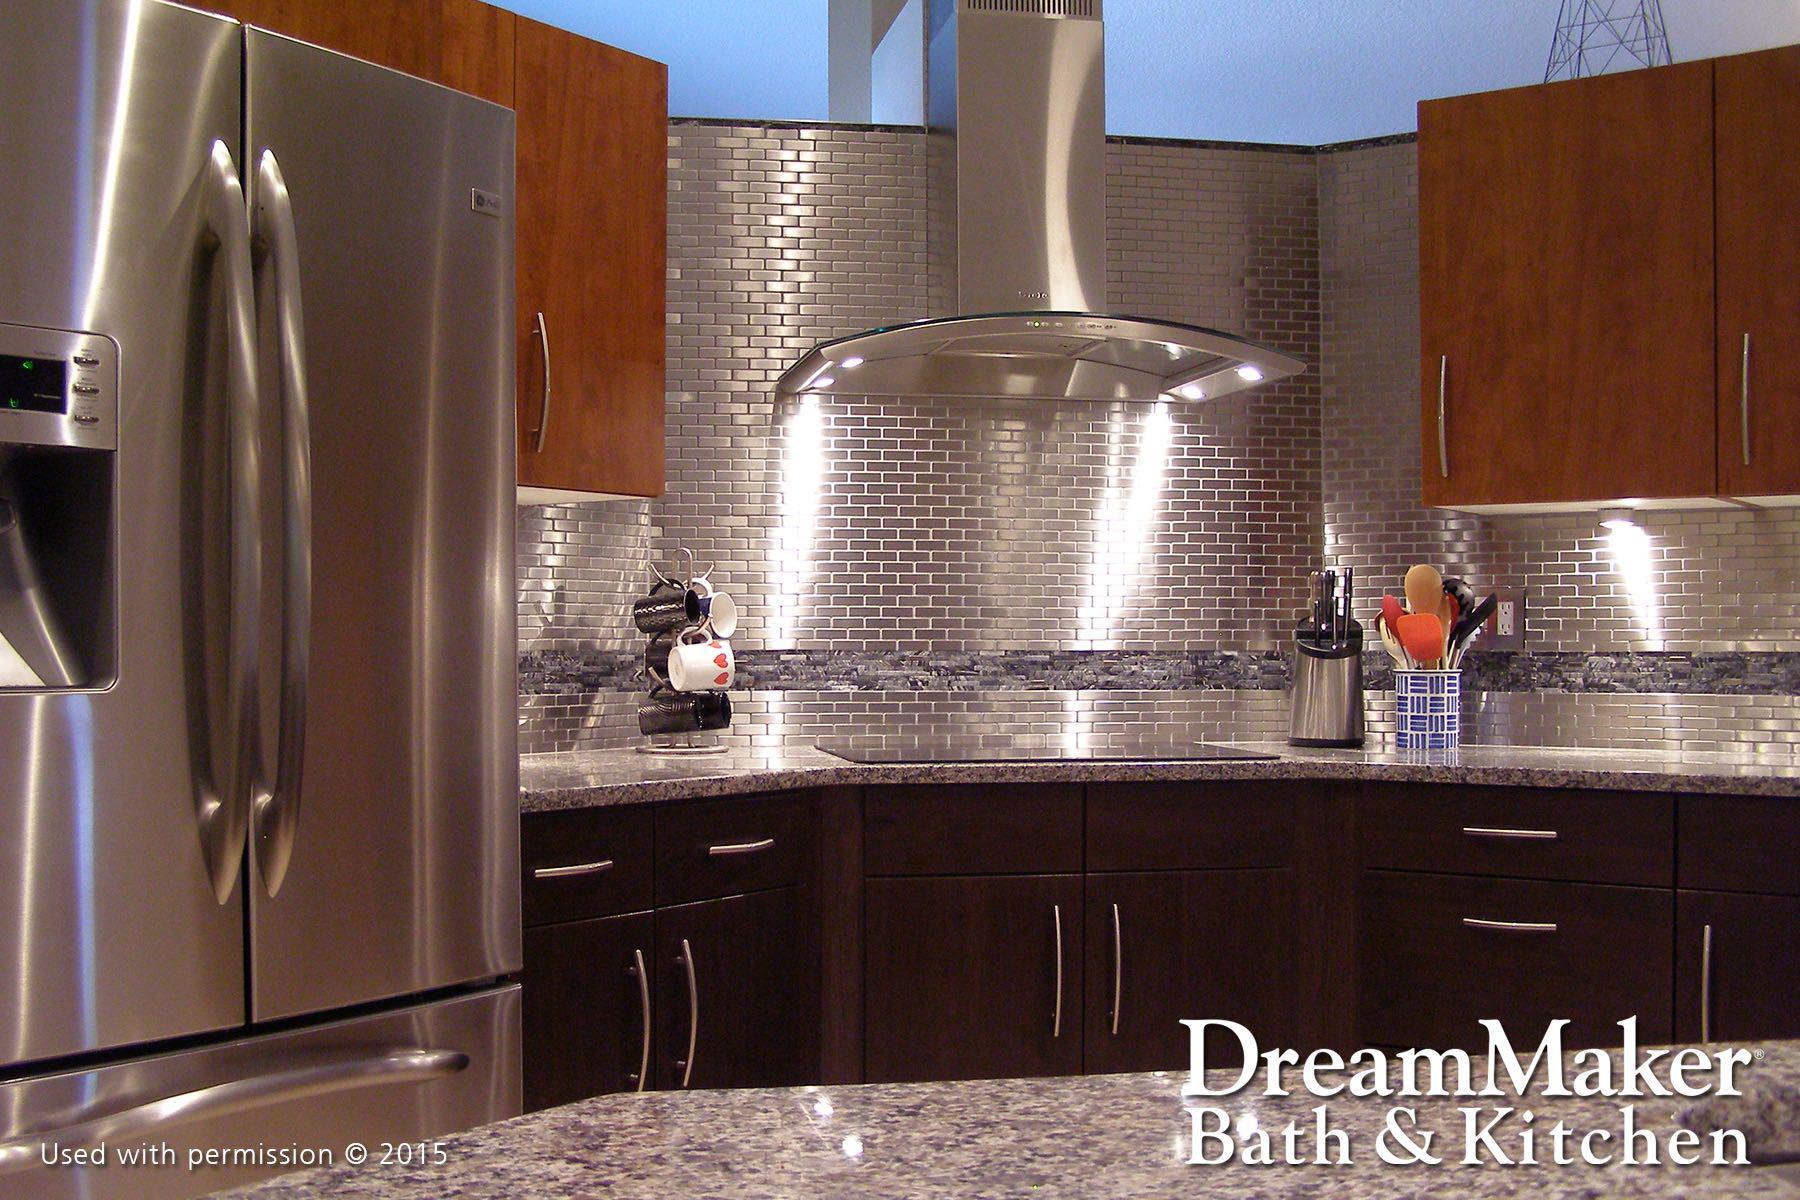 Dreammaker Bath & Kitchen Photo